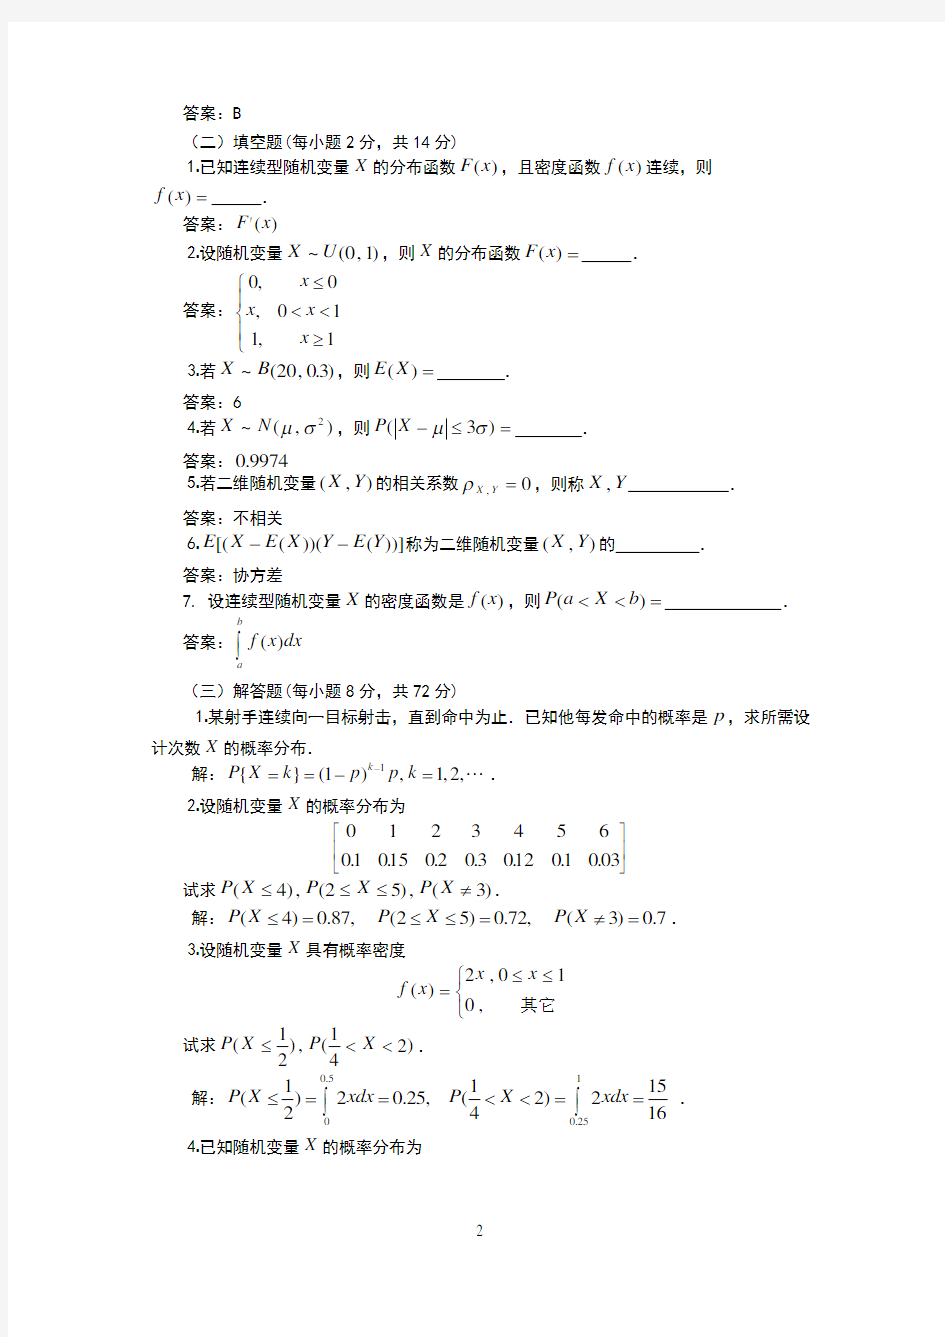 《工程数学(本)》作业解答(四)